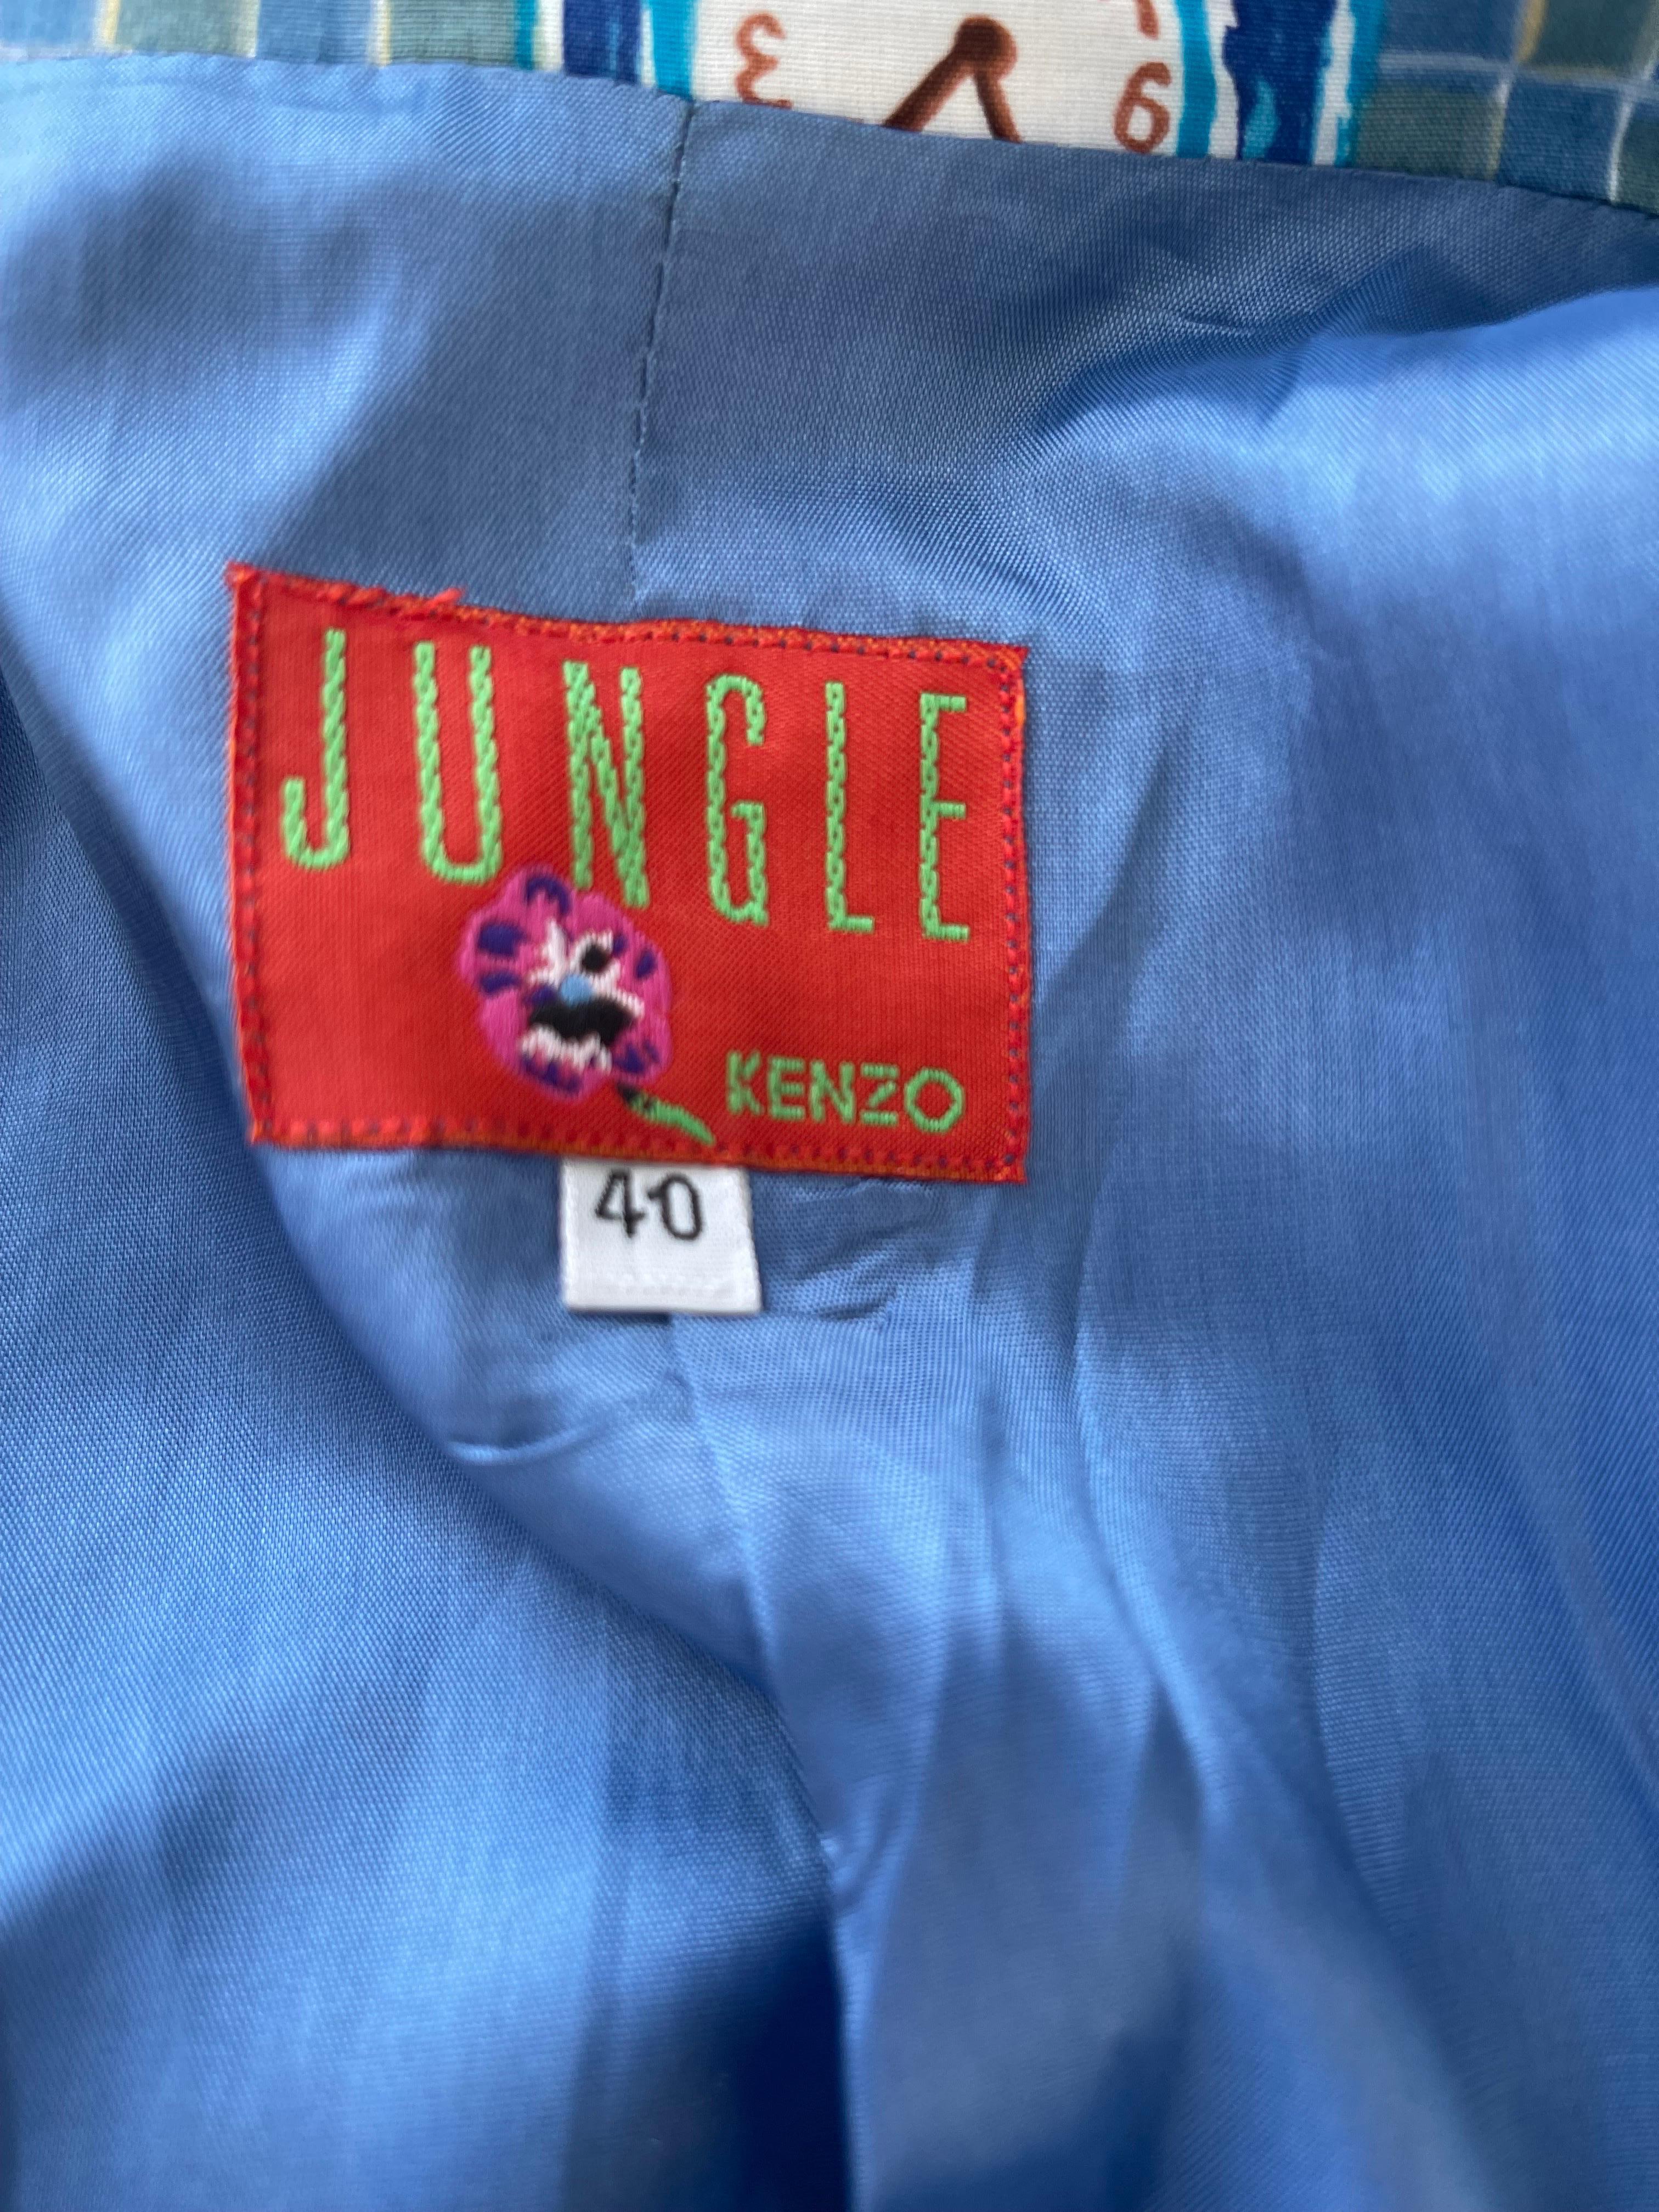 Rare veste de blazer KENZO Jungling bleu vif multicolore à imprimé fantaisie ! Tissu en rayonne Sot dans des couleurs vives de bleu, terracotta, jaune, turquoise et marron dans l'ensemble. Trois boutons sur le devant et deux poches de chaque côté de